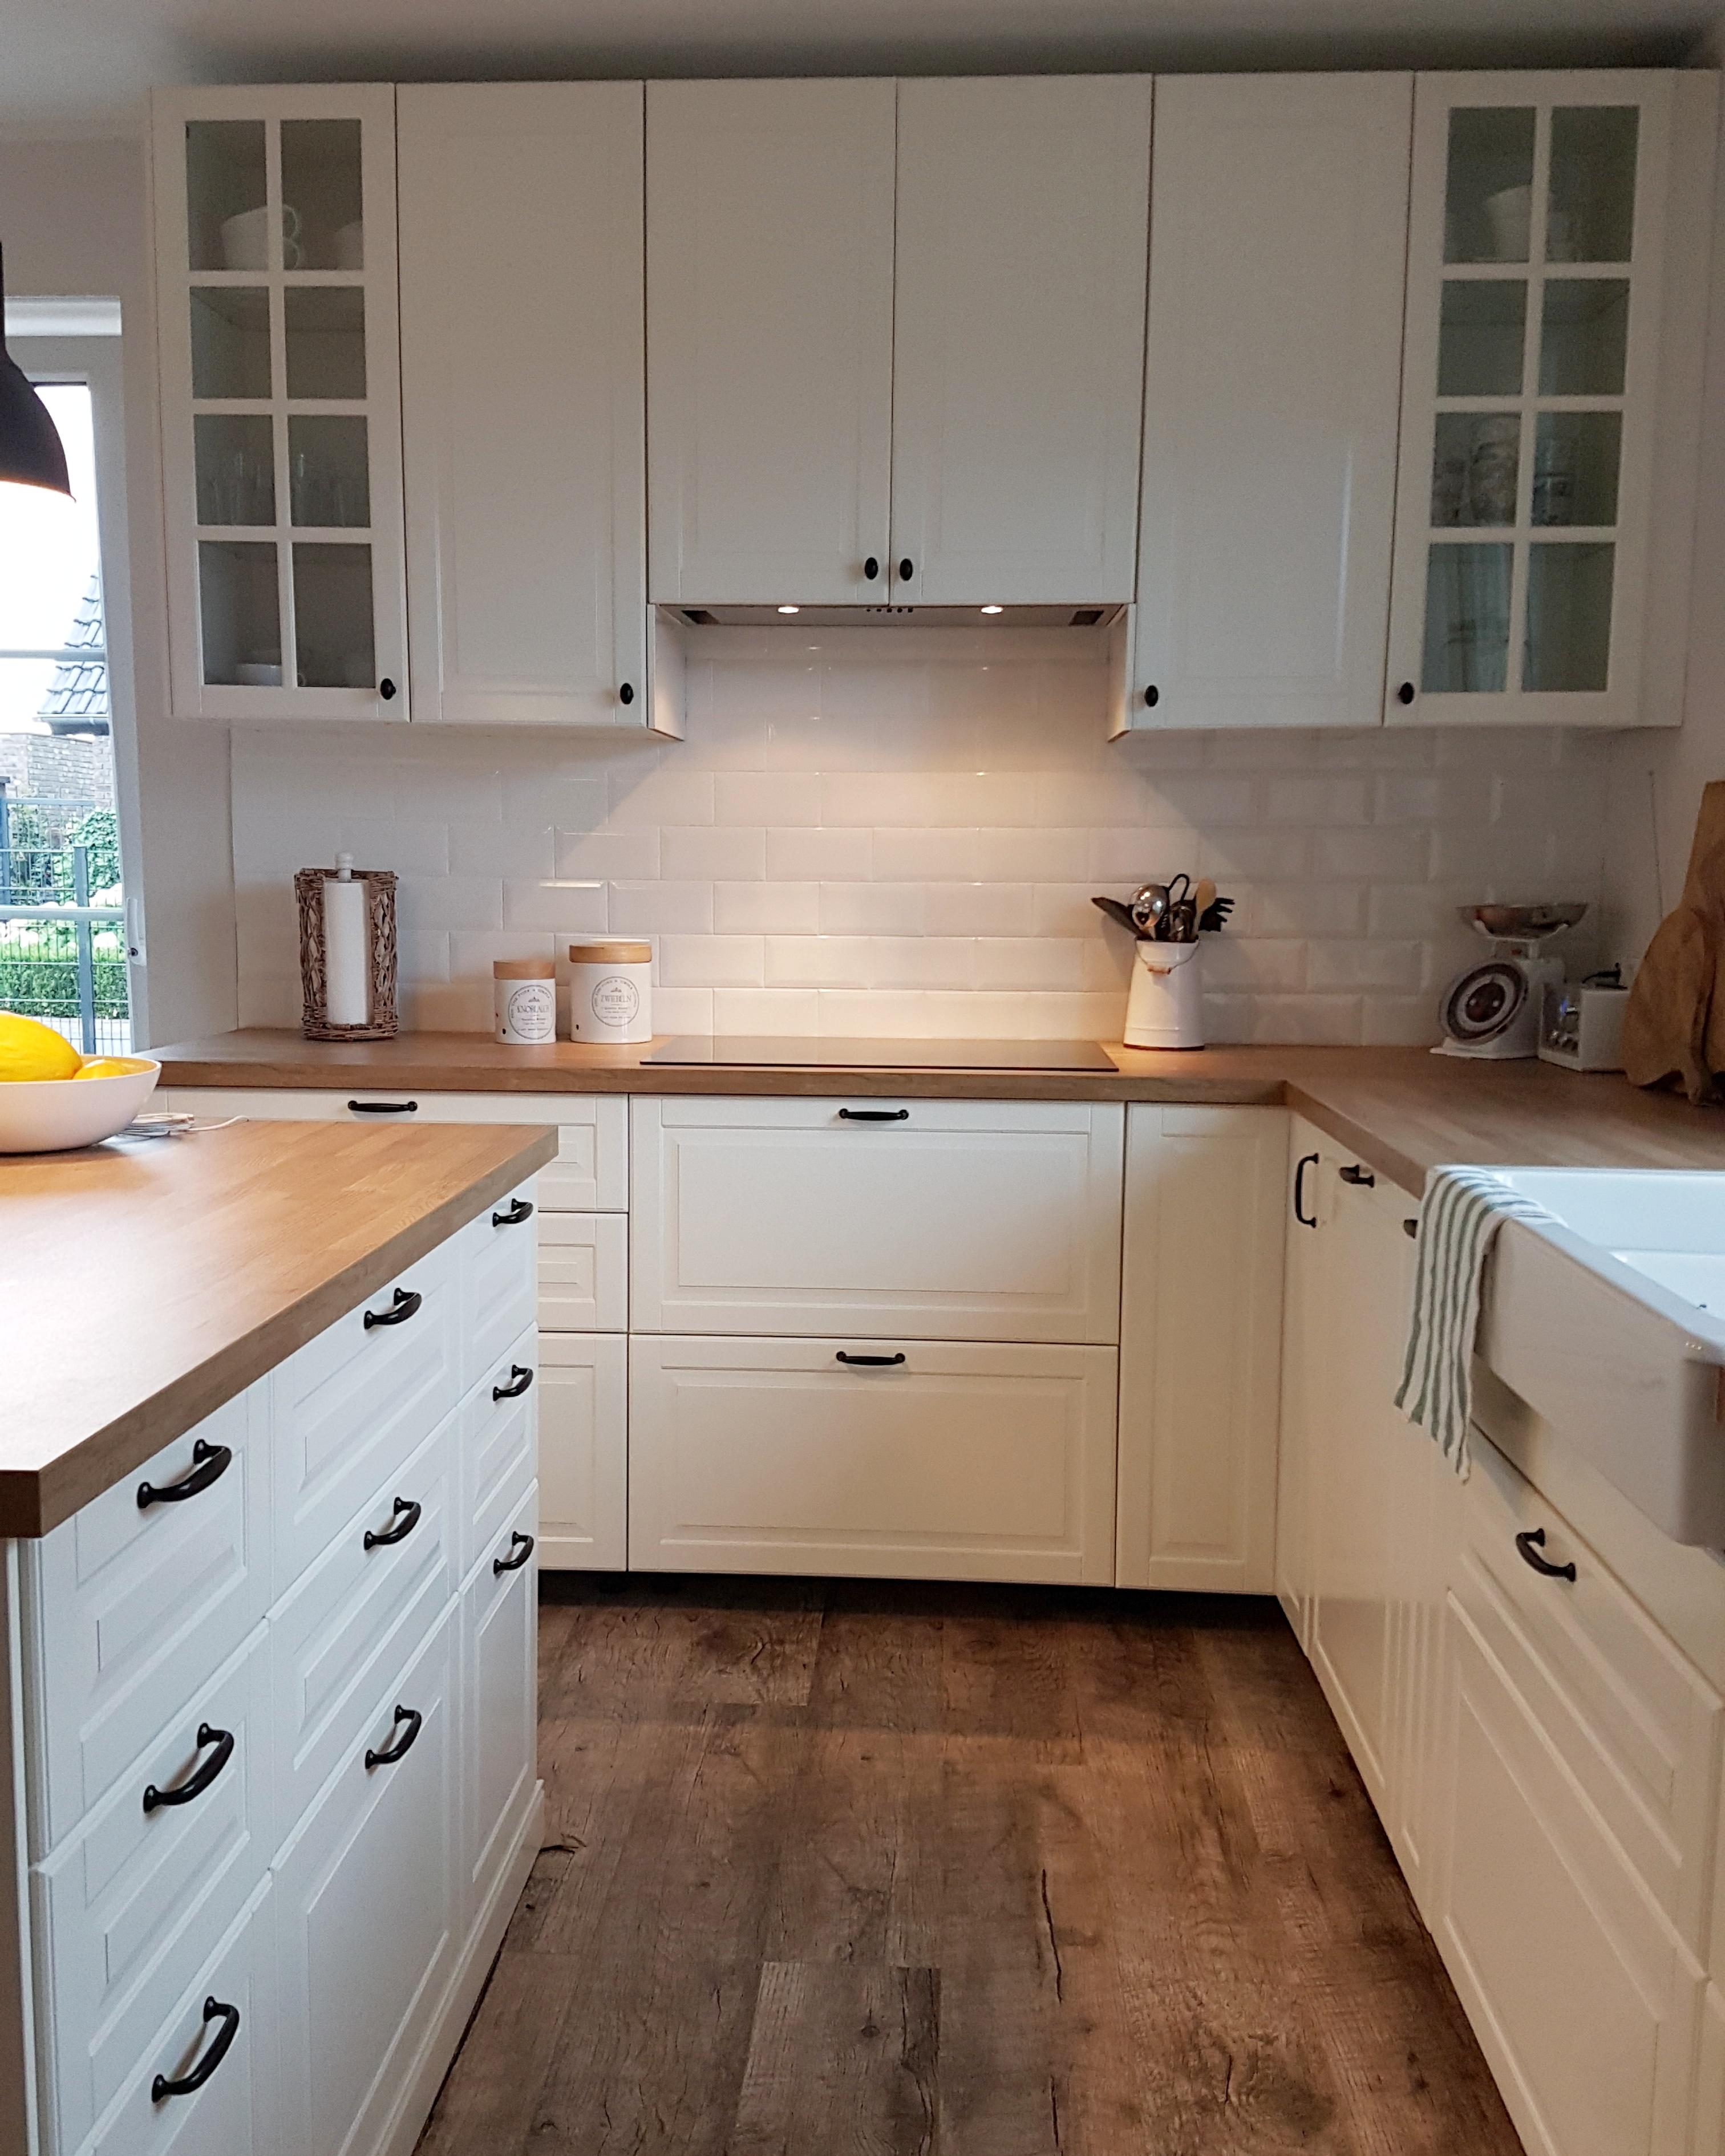 #grohebluehome #küche Zu unserer neuen Küche in unserem frisch erbauten Eigenheim würde die Armatur perfekt passen!